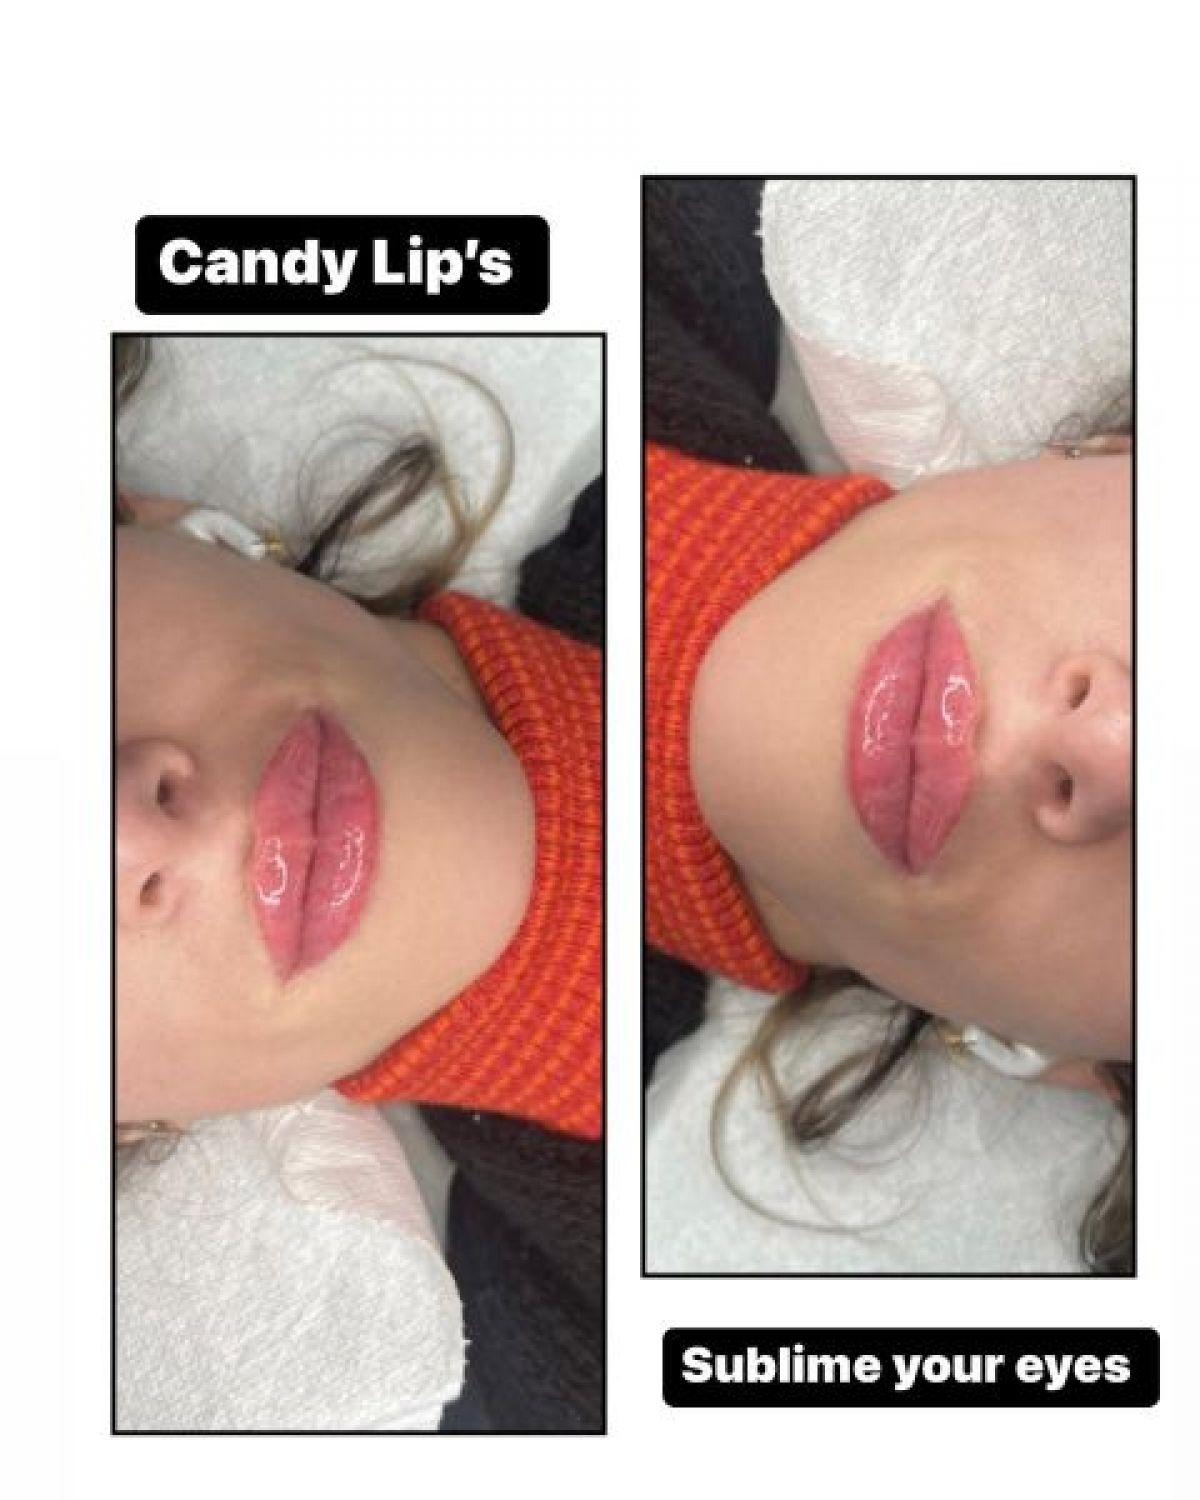 Maquillage permanent lèvres (candy lips) à Boussy-Saint-Antoine (91) Par Fatima - Estheca